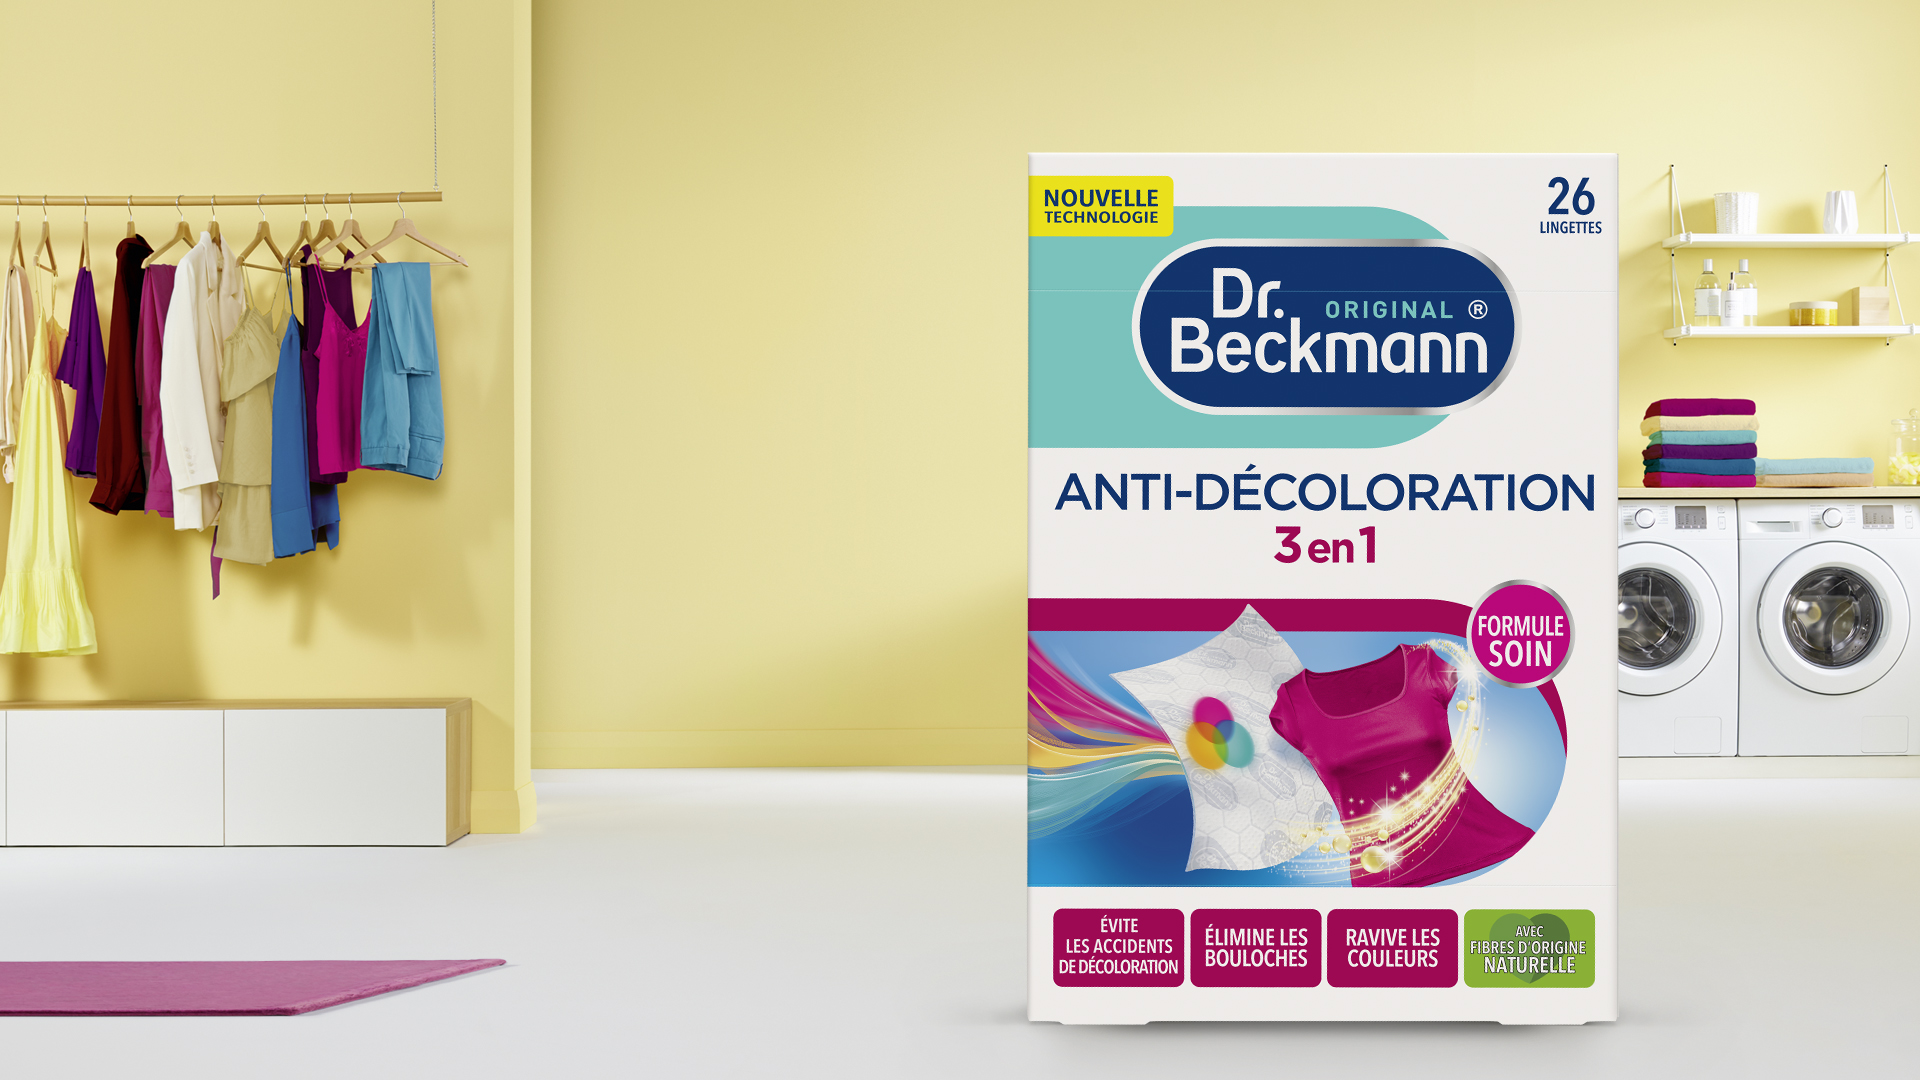 Dr. Beckmann Tunisie - Les lingettes anti-décoloration Dr Beckmann